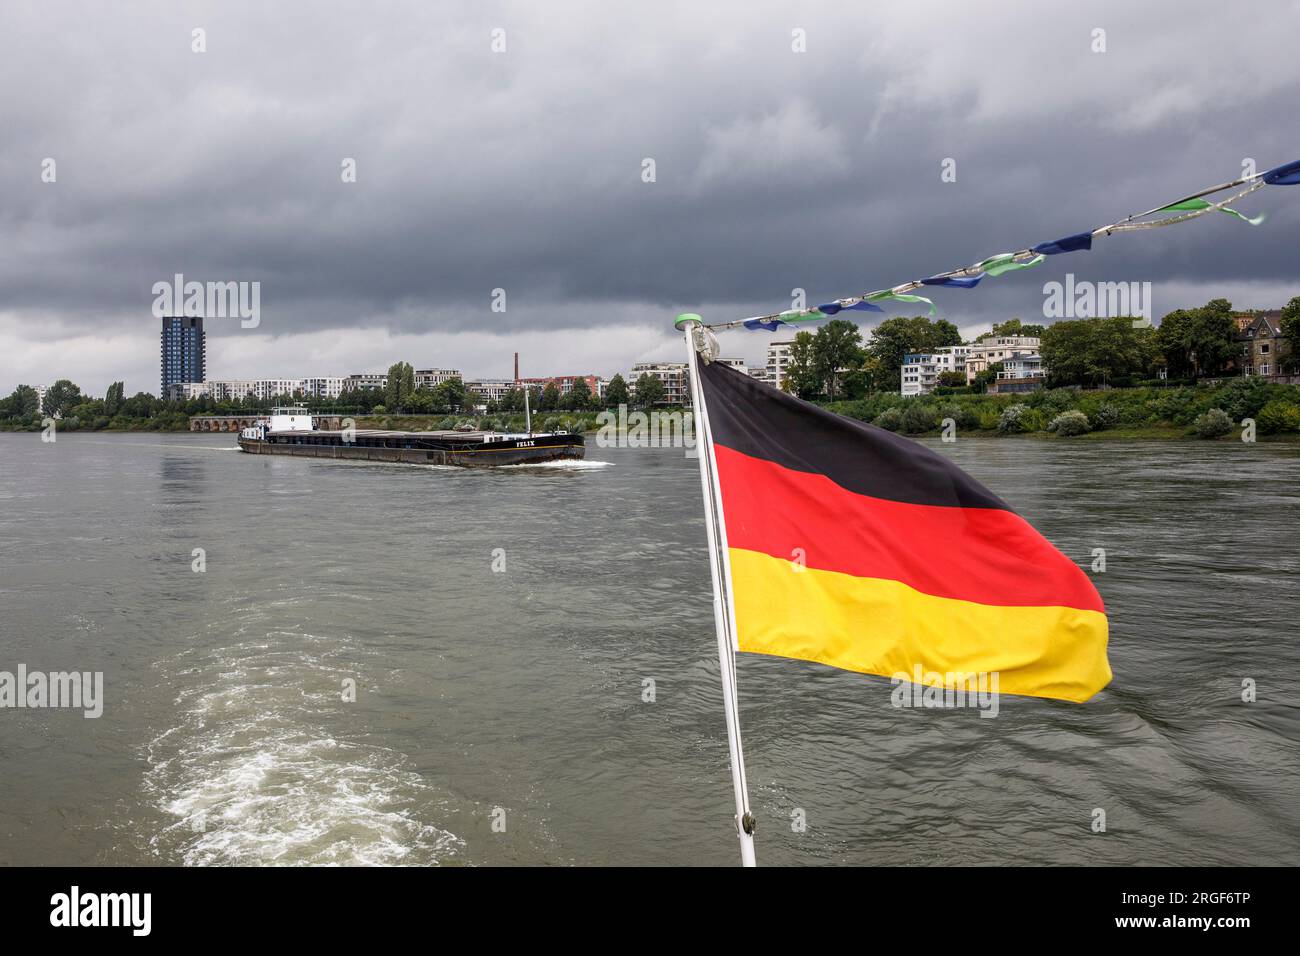 Frachtschiff auf dem Rhein, Rheinufer im Bezirk Mülheim, deutsche Flagge auf einem Ausflugsboot, Köln, Deutschland. Frachtschiff auf dem Rhein, R Stockfoto